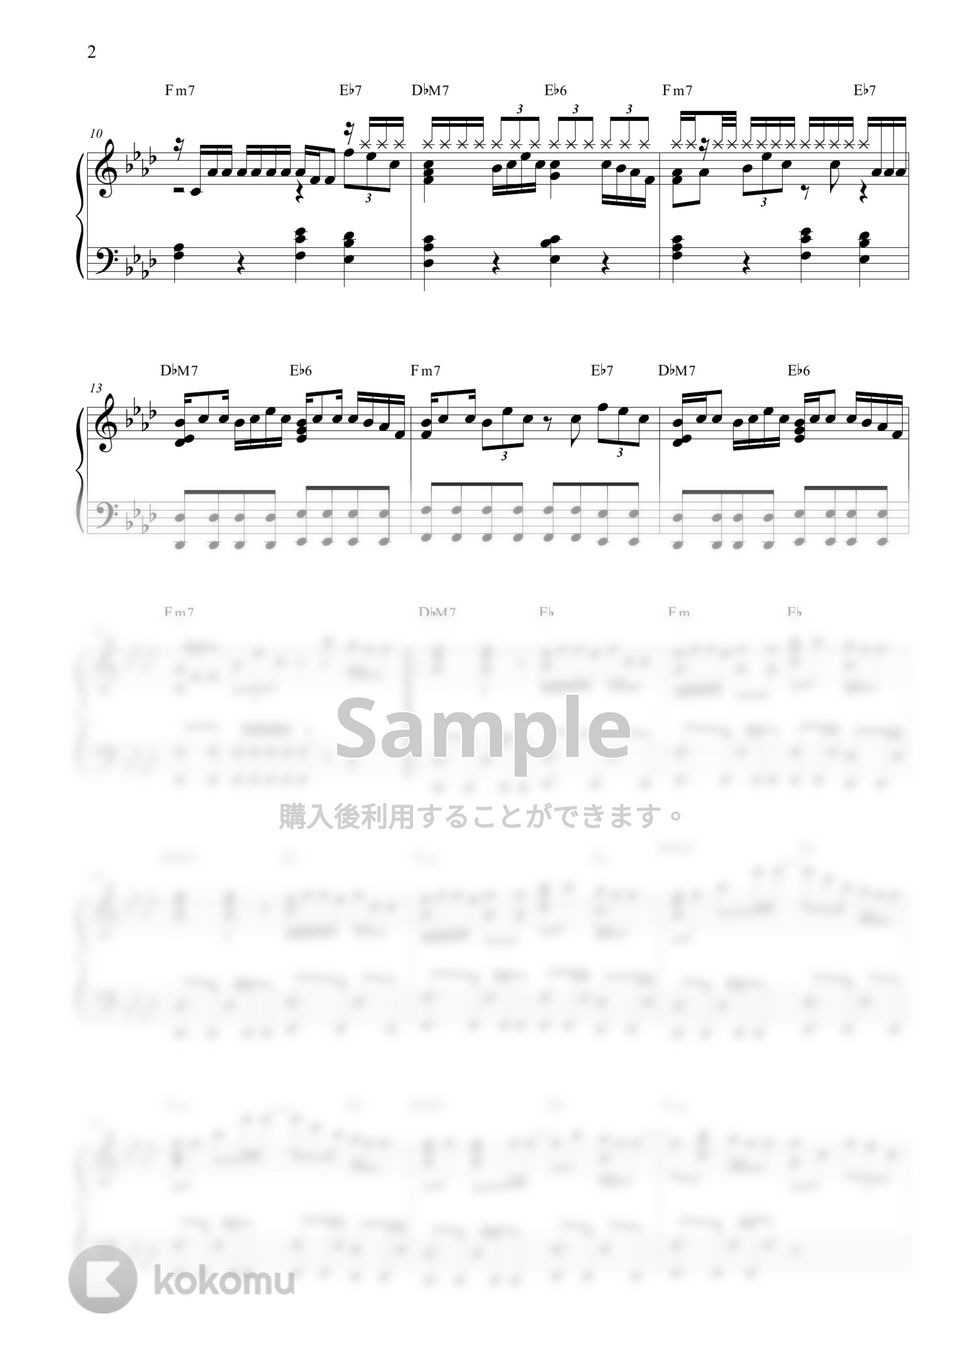 防弾少年団 (BTS) - I NEED U by KPOP PIANO